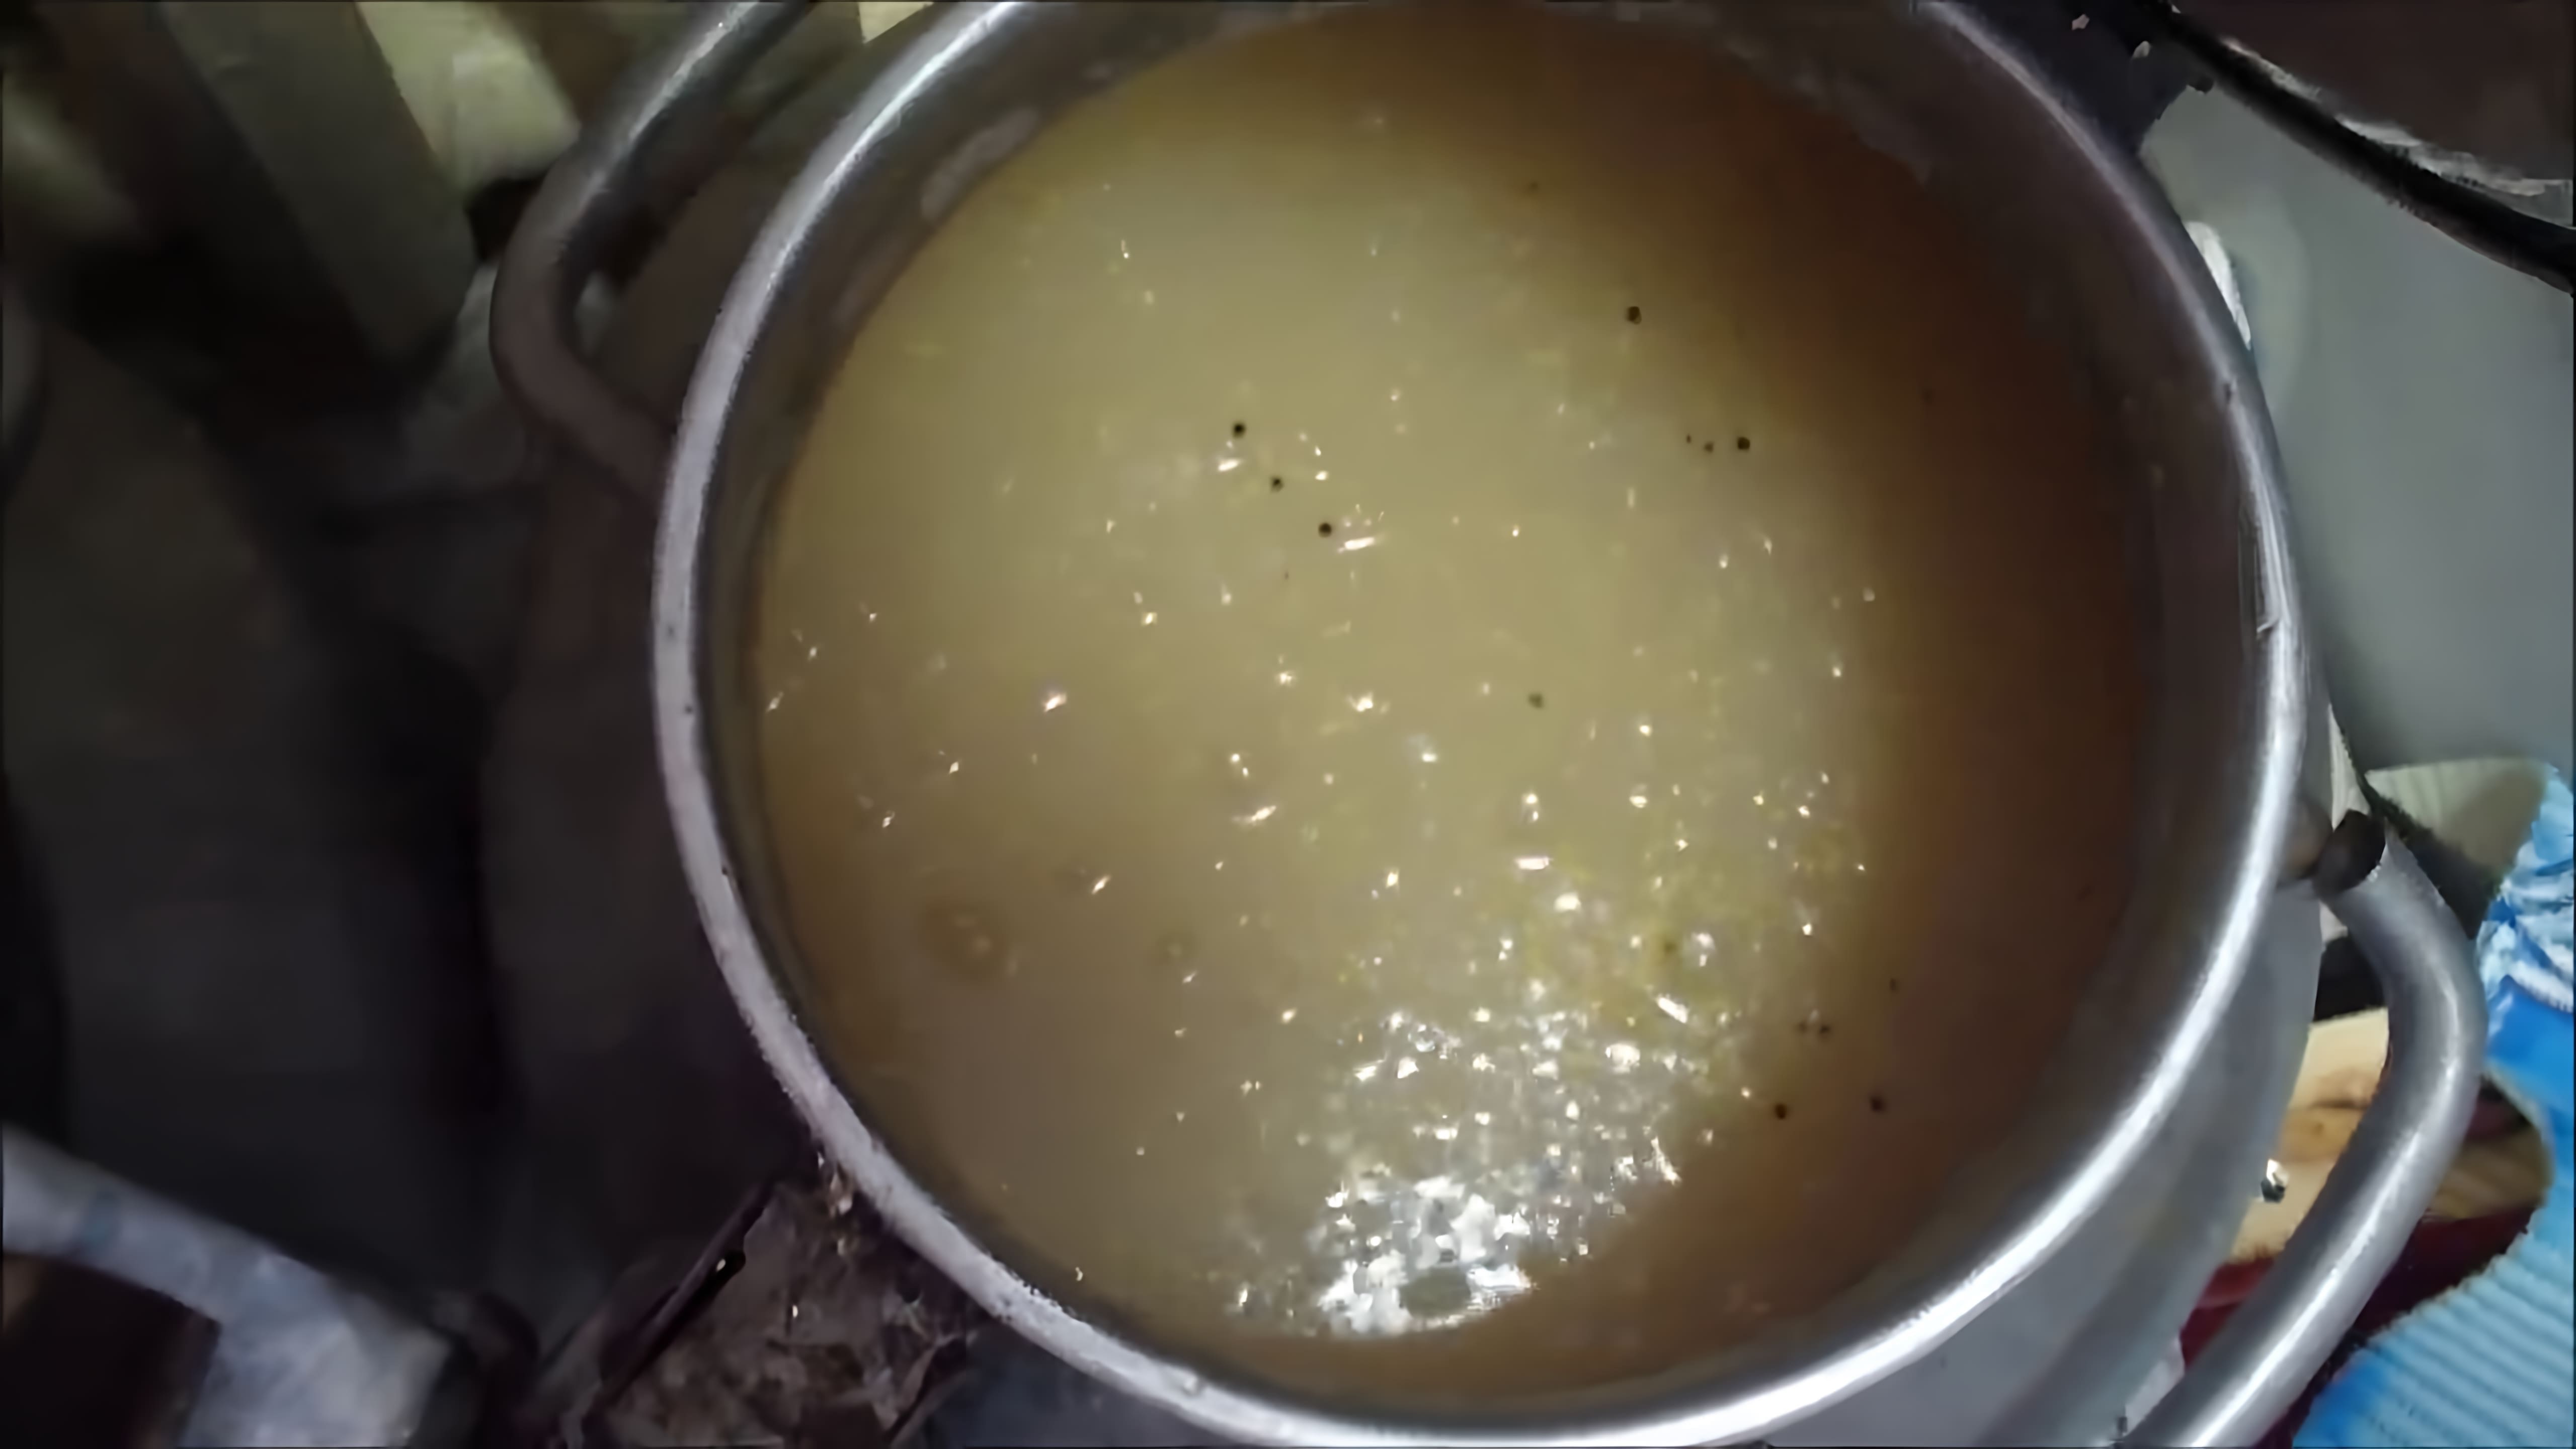 В данном видео демонстрируется процесс приготовления браги для самогона по бабушкиному рецепту